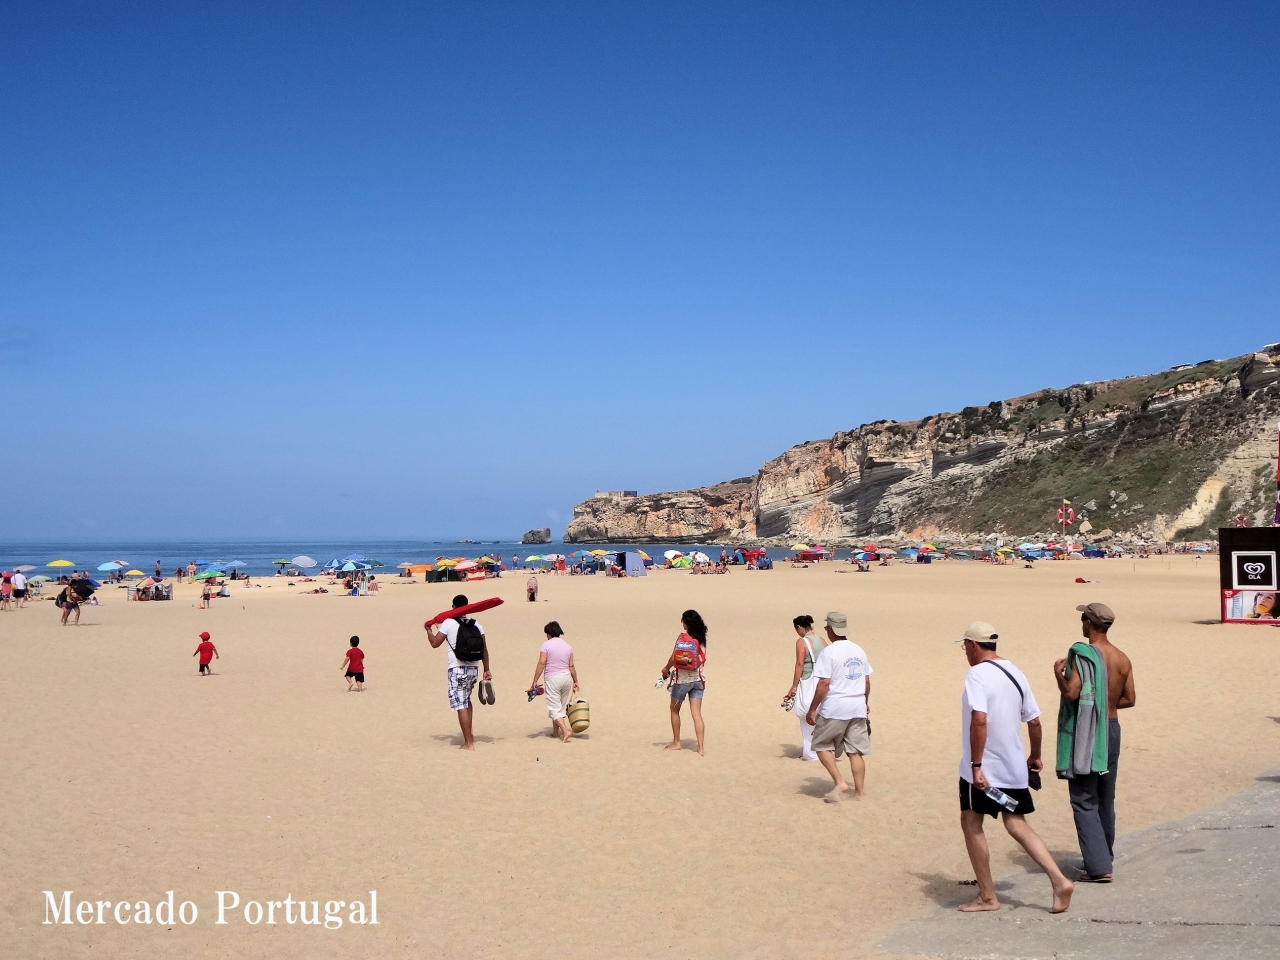 第19回 ナザレの伝説 Portugal Lifestyle ポルトガル流 幸せなライフスタイル ポルトガルワインと輸入食材 メルカード ポルトガル